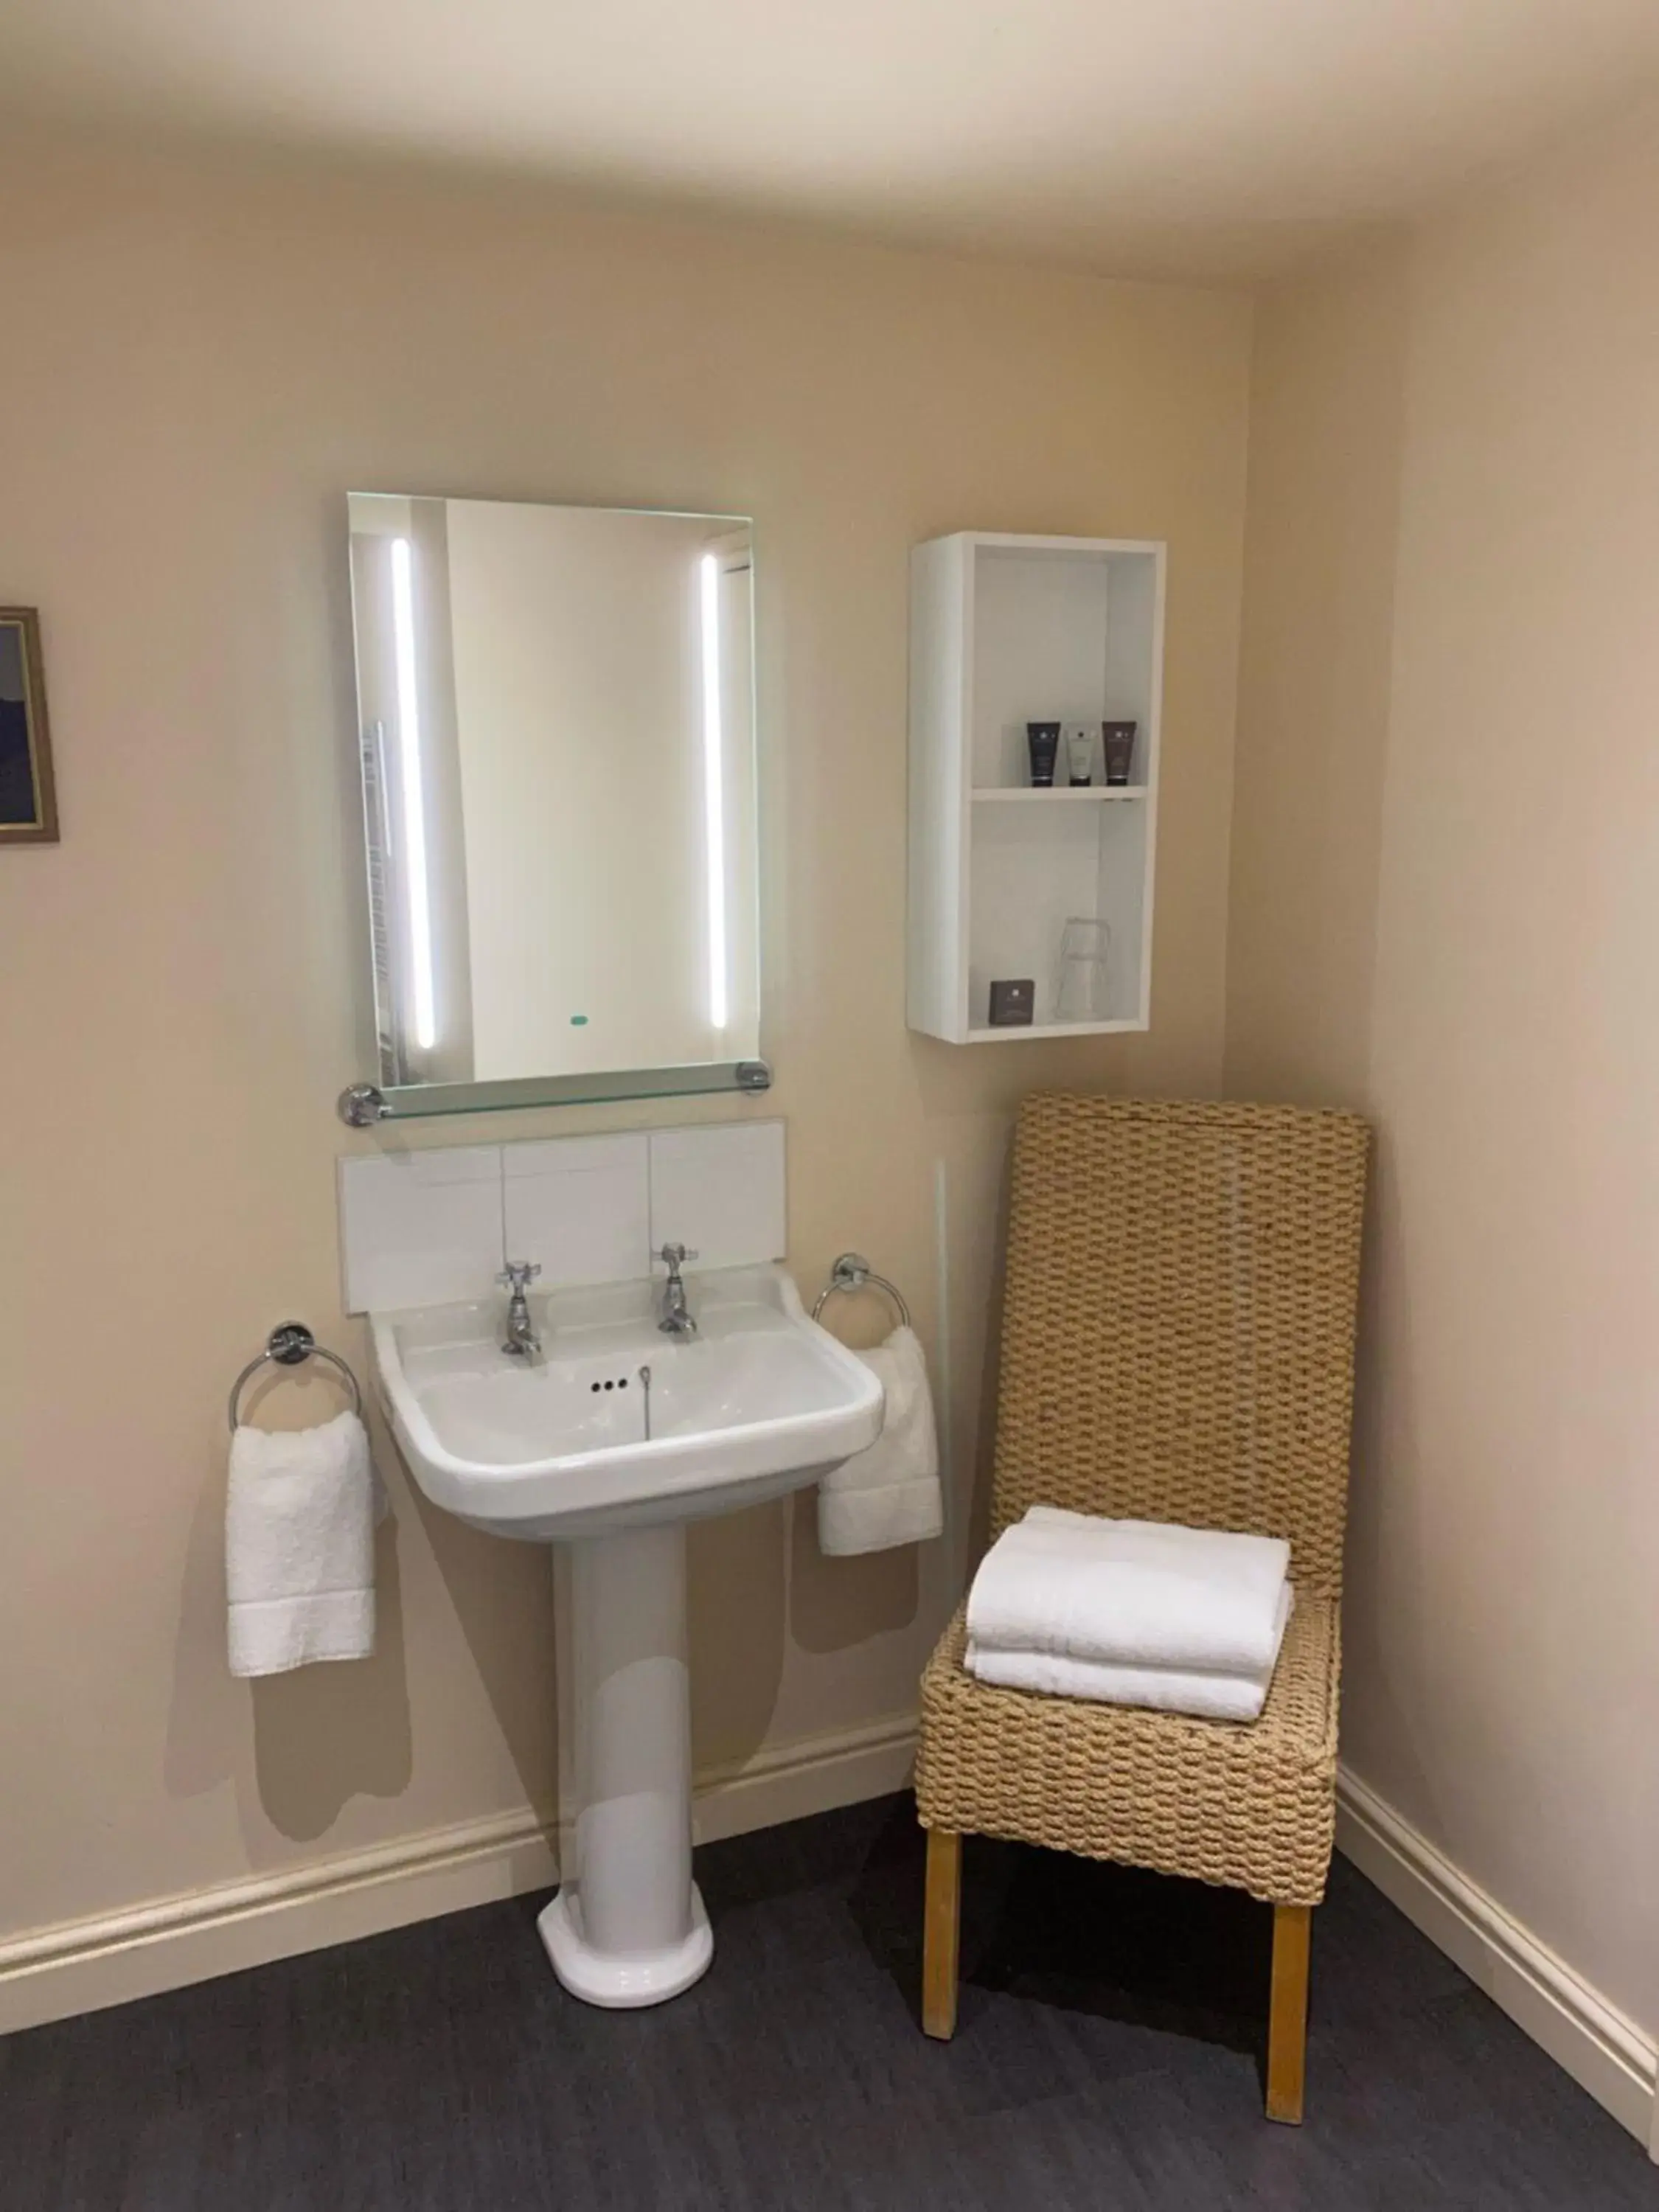 Bathroom in The Wensleydale Hotel